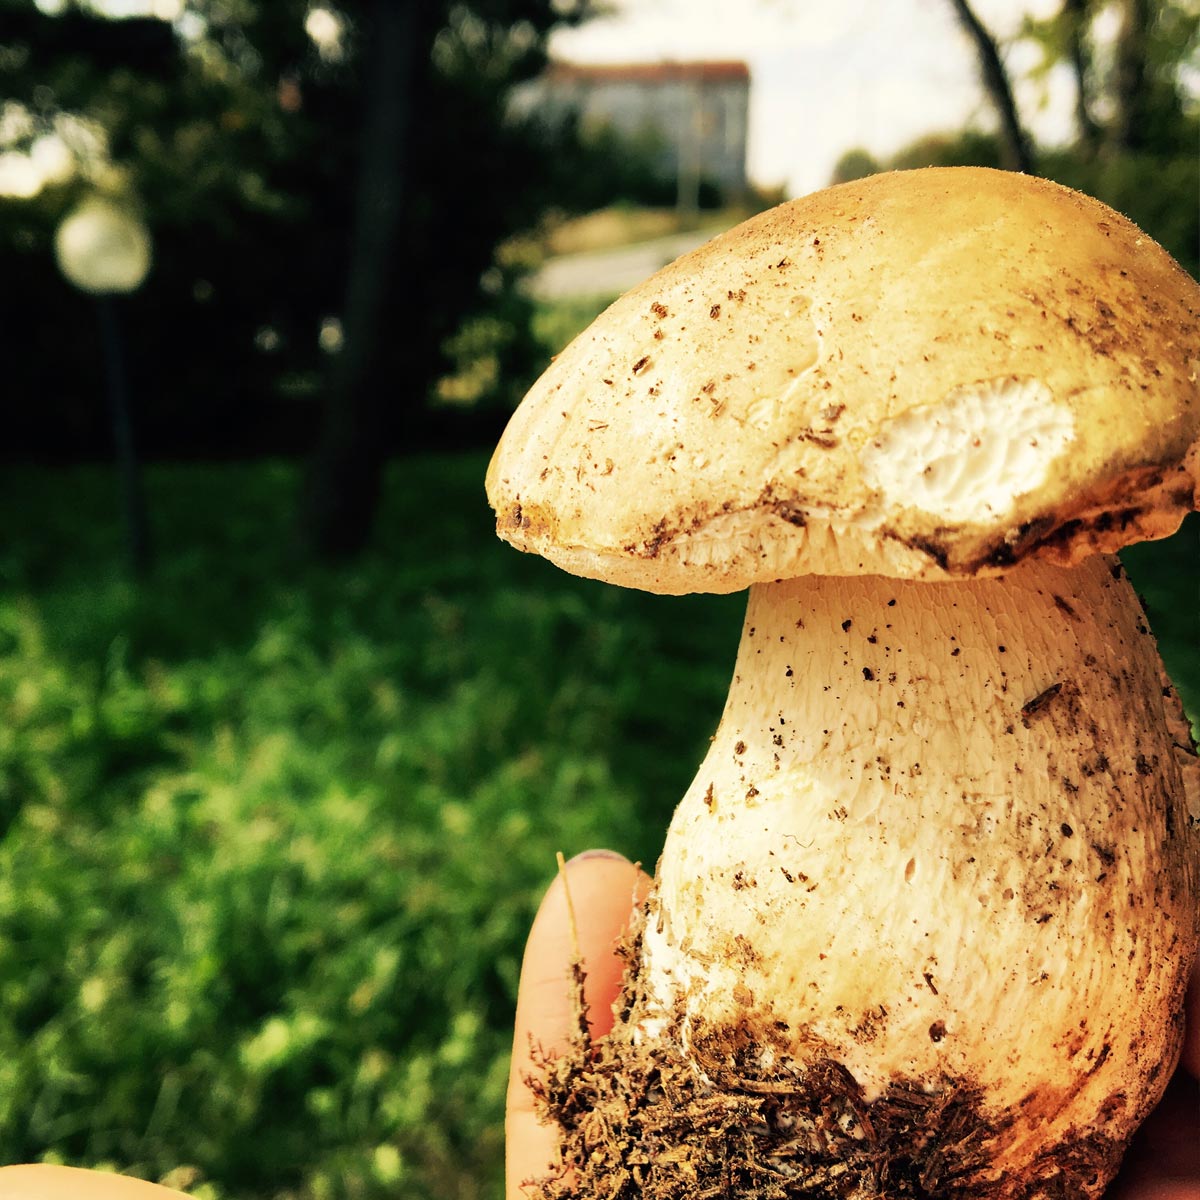 A big mushroom!